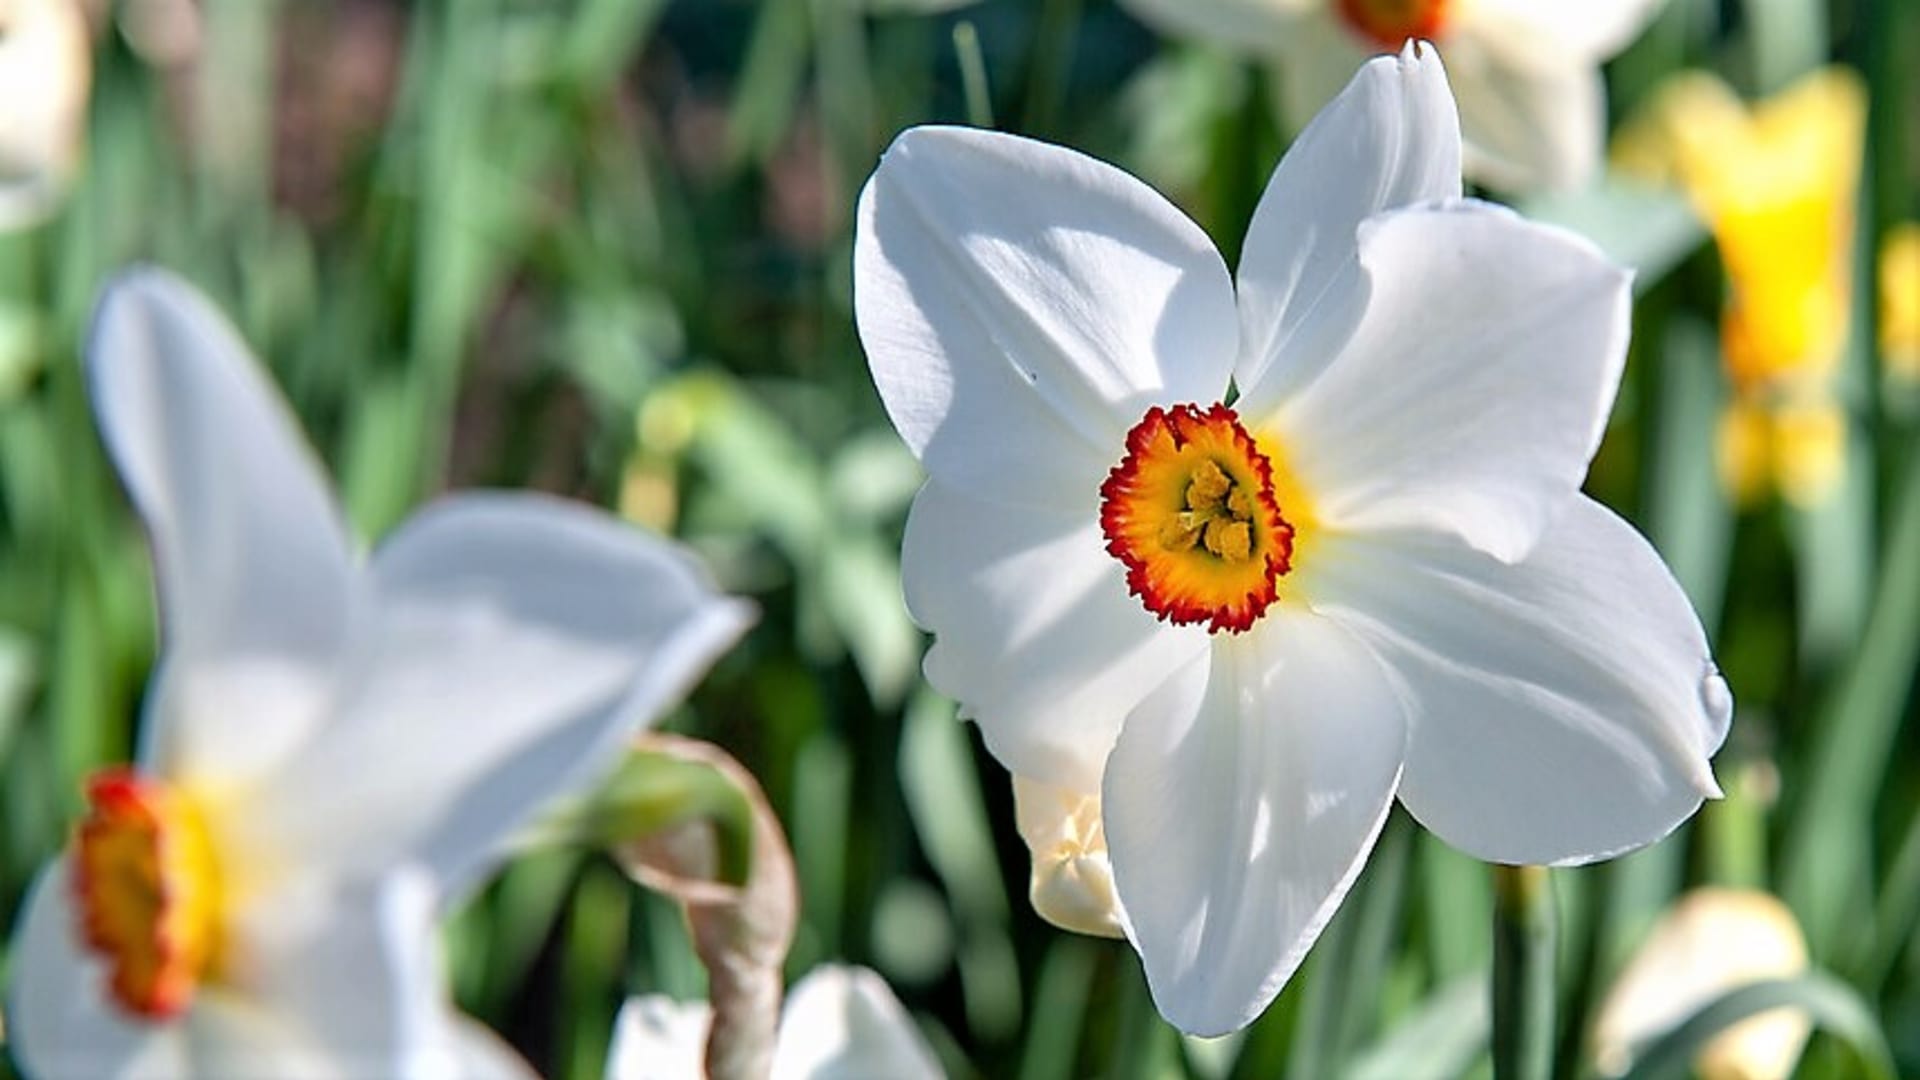 Narcissus poeticus var. recurvus zdobil zahrádky našich babiček. Je vysoký 30 až 40 cm. Má čistě bílé okvětní plátky, střed je zelenožlutý s červeným lemováním, květy jsou široké zhruba 6 cm. 